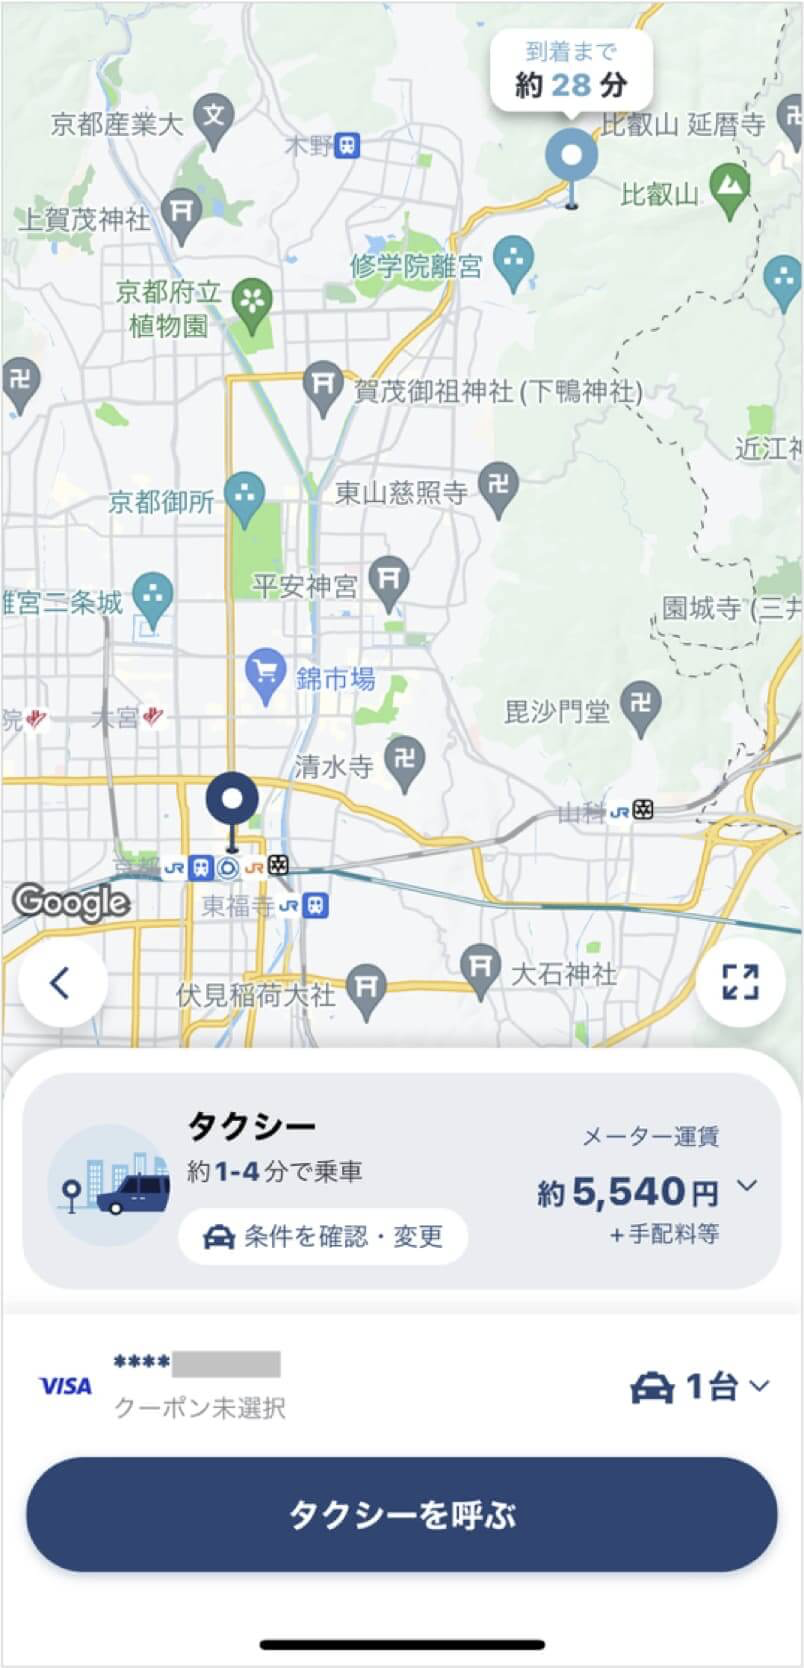 京都駅から瑠璃光院までのタクシー料金・所要時間まとめ